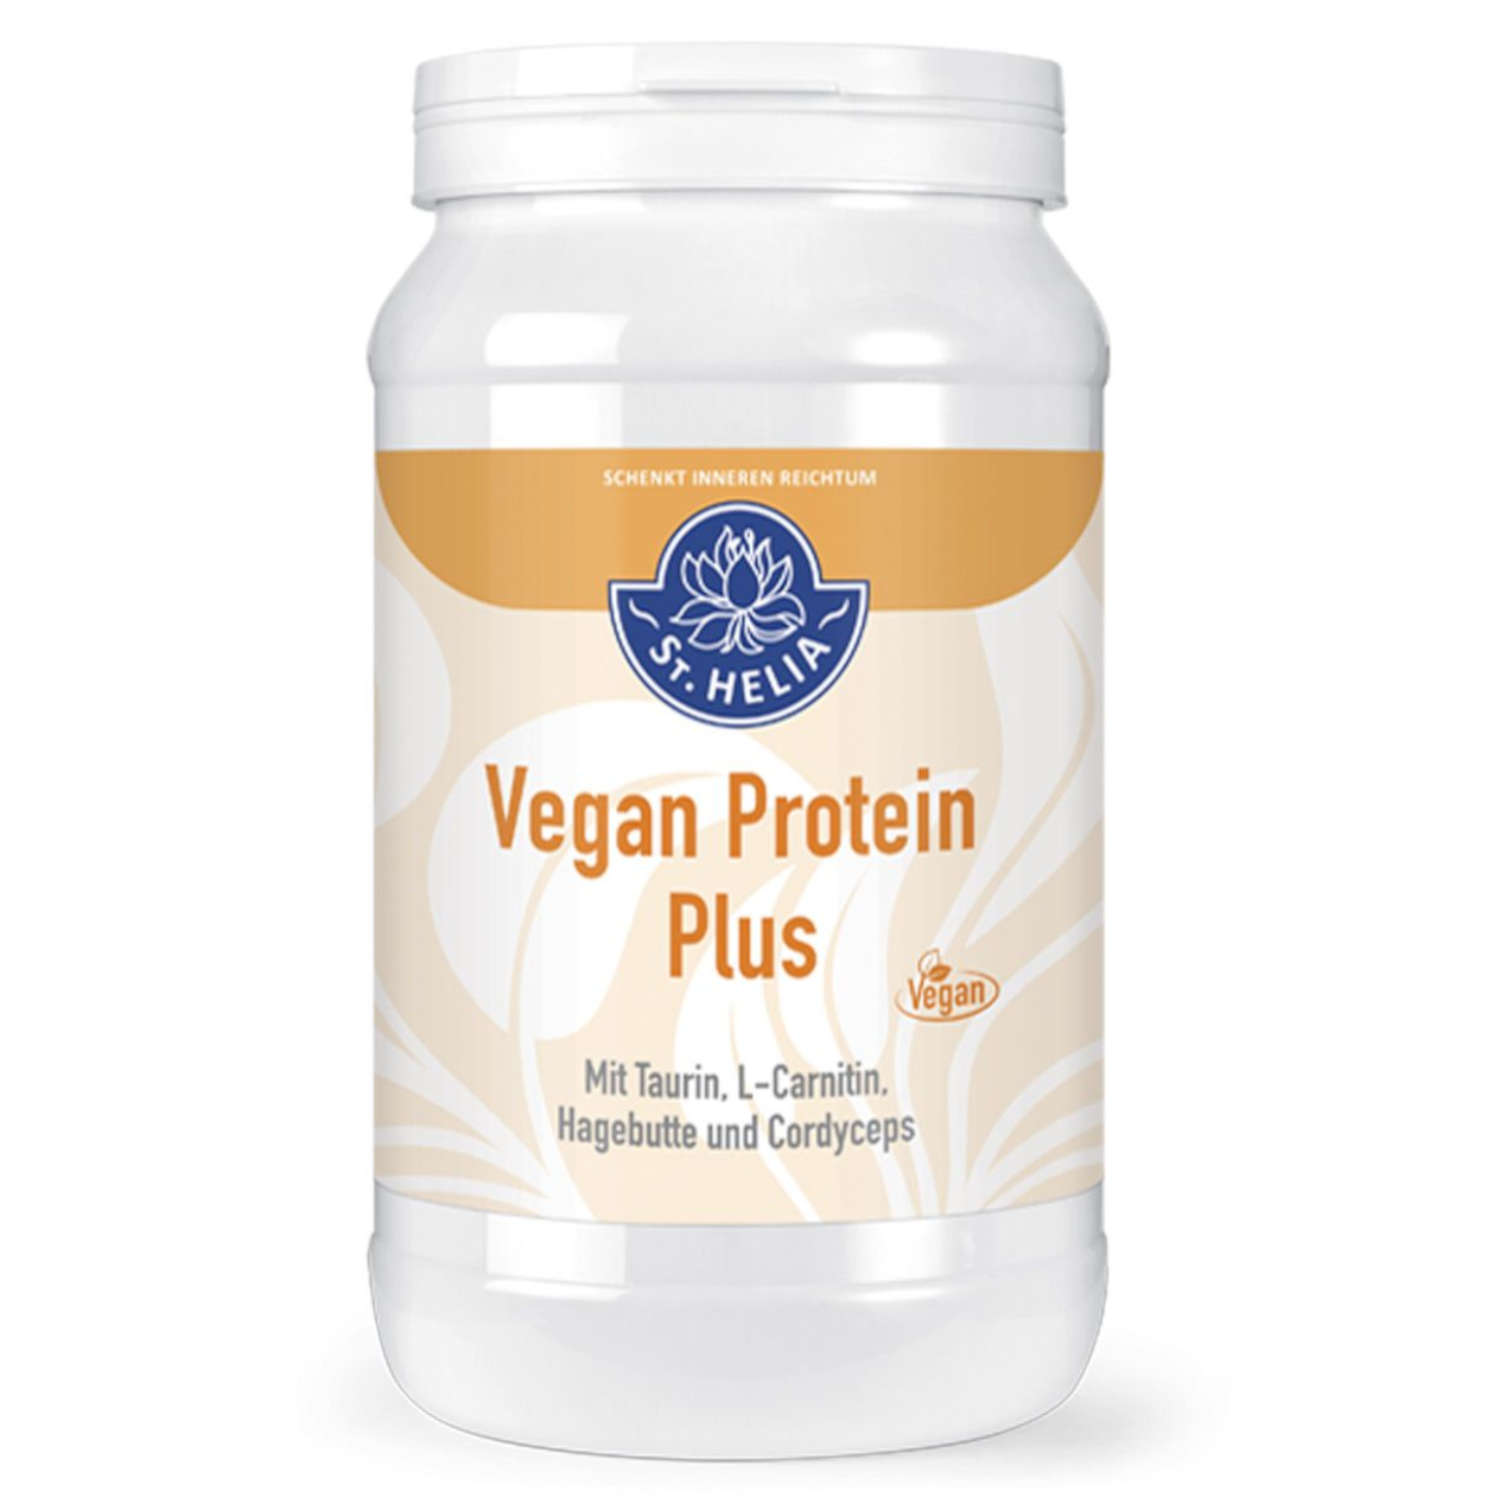 Vegan Eiweiss Protein Plus von St. Helia